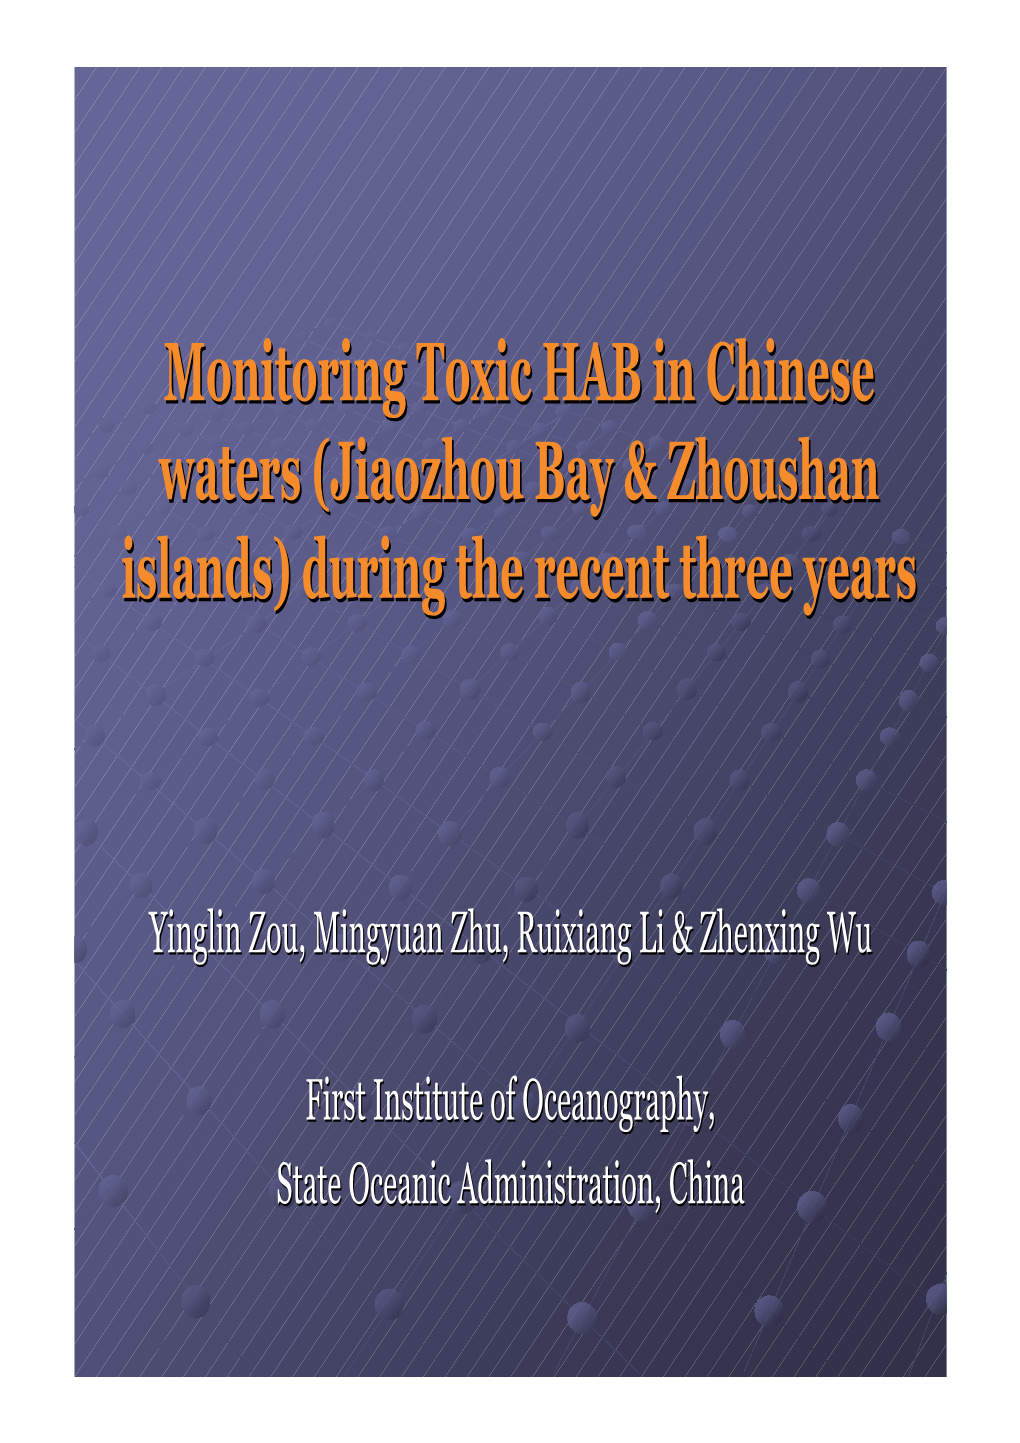 Monitoring Toxic HAB in Chinese Waters (Jiaozhou Bay & Zhoushan